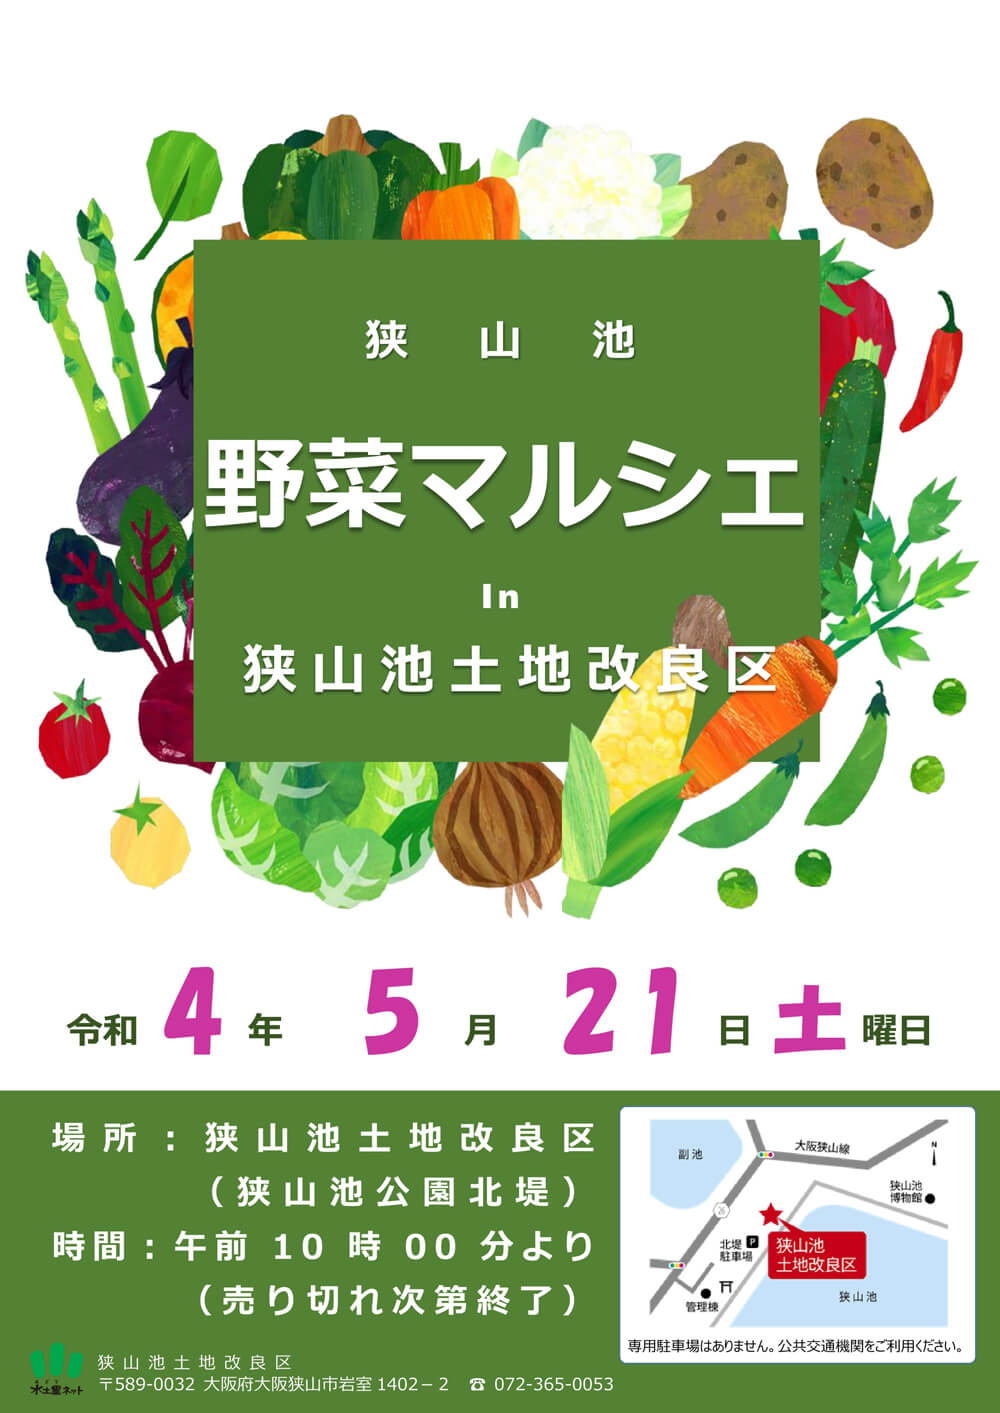 【2022年5月21日】 狭山池土地改良区で「野菜マルシェ」が開催されます (3)